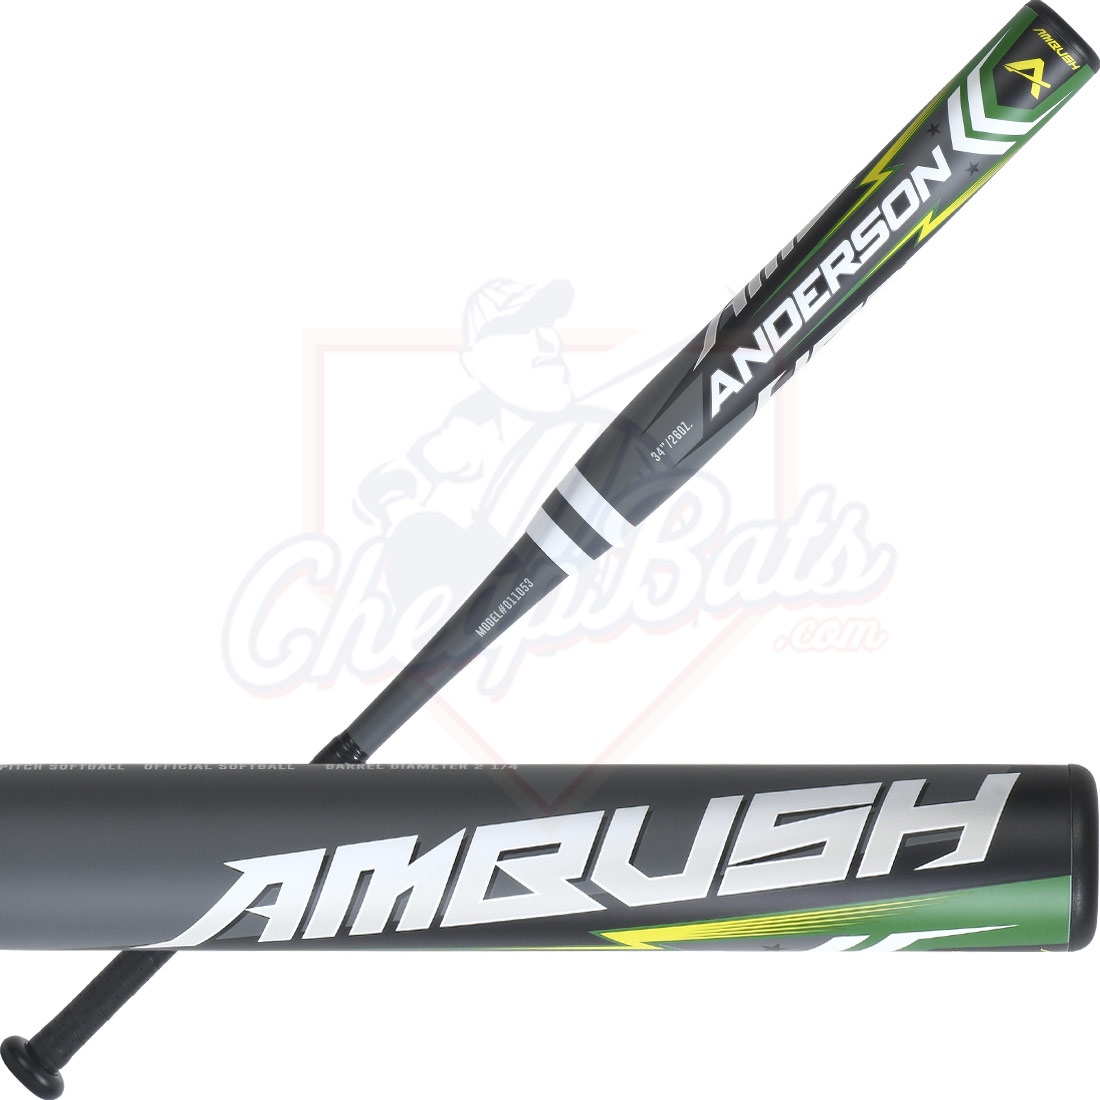 2021 Anderson Ambush Slowpitch Softball Bat Balanced ASA USA USSSA 011053